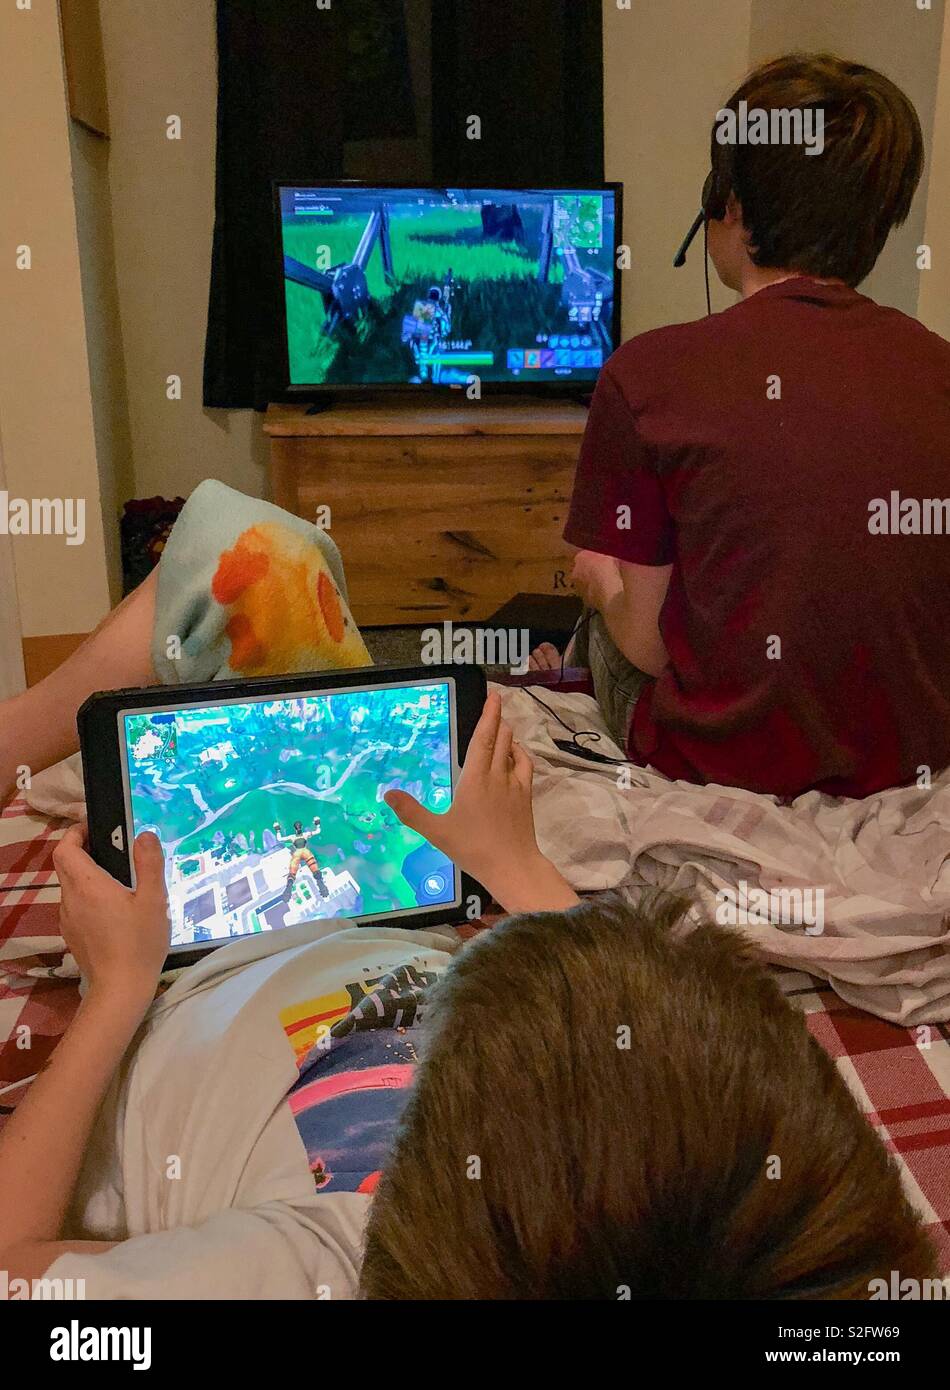 Zwei Brüder spielen Fortnite auf Ihrem eigenen Gerät. Der ältere Bruder  spielt auf den Fernseher im Hintergrund und der jüngere Bruder spielt auf  seinem Tablet im Vordergrund Stockfotografie - Alamy